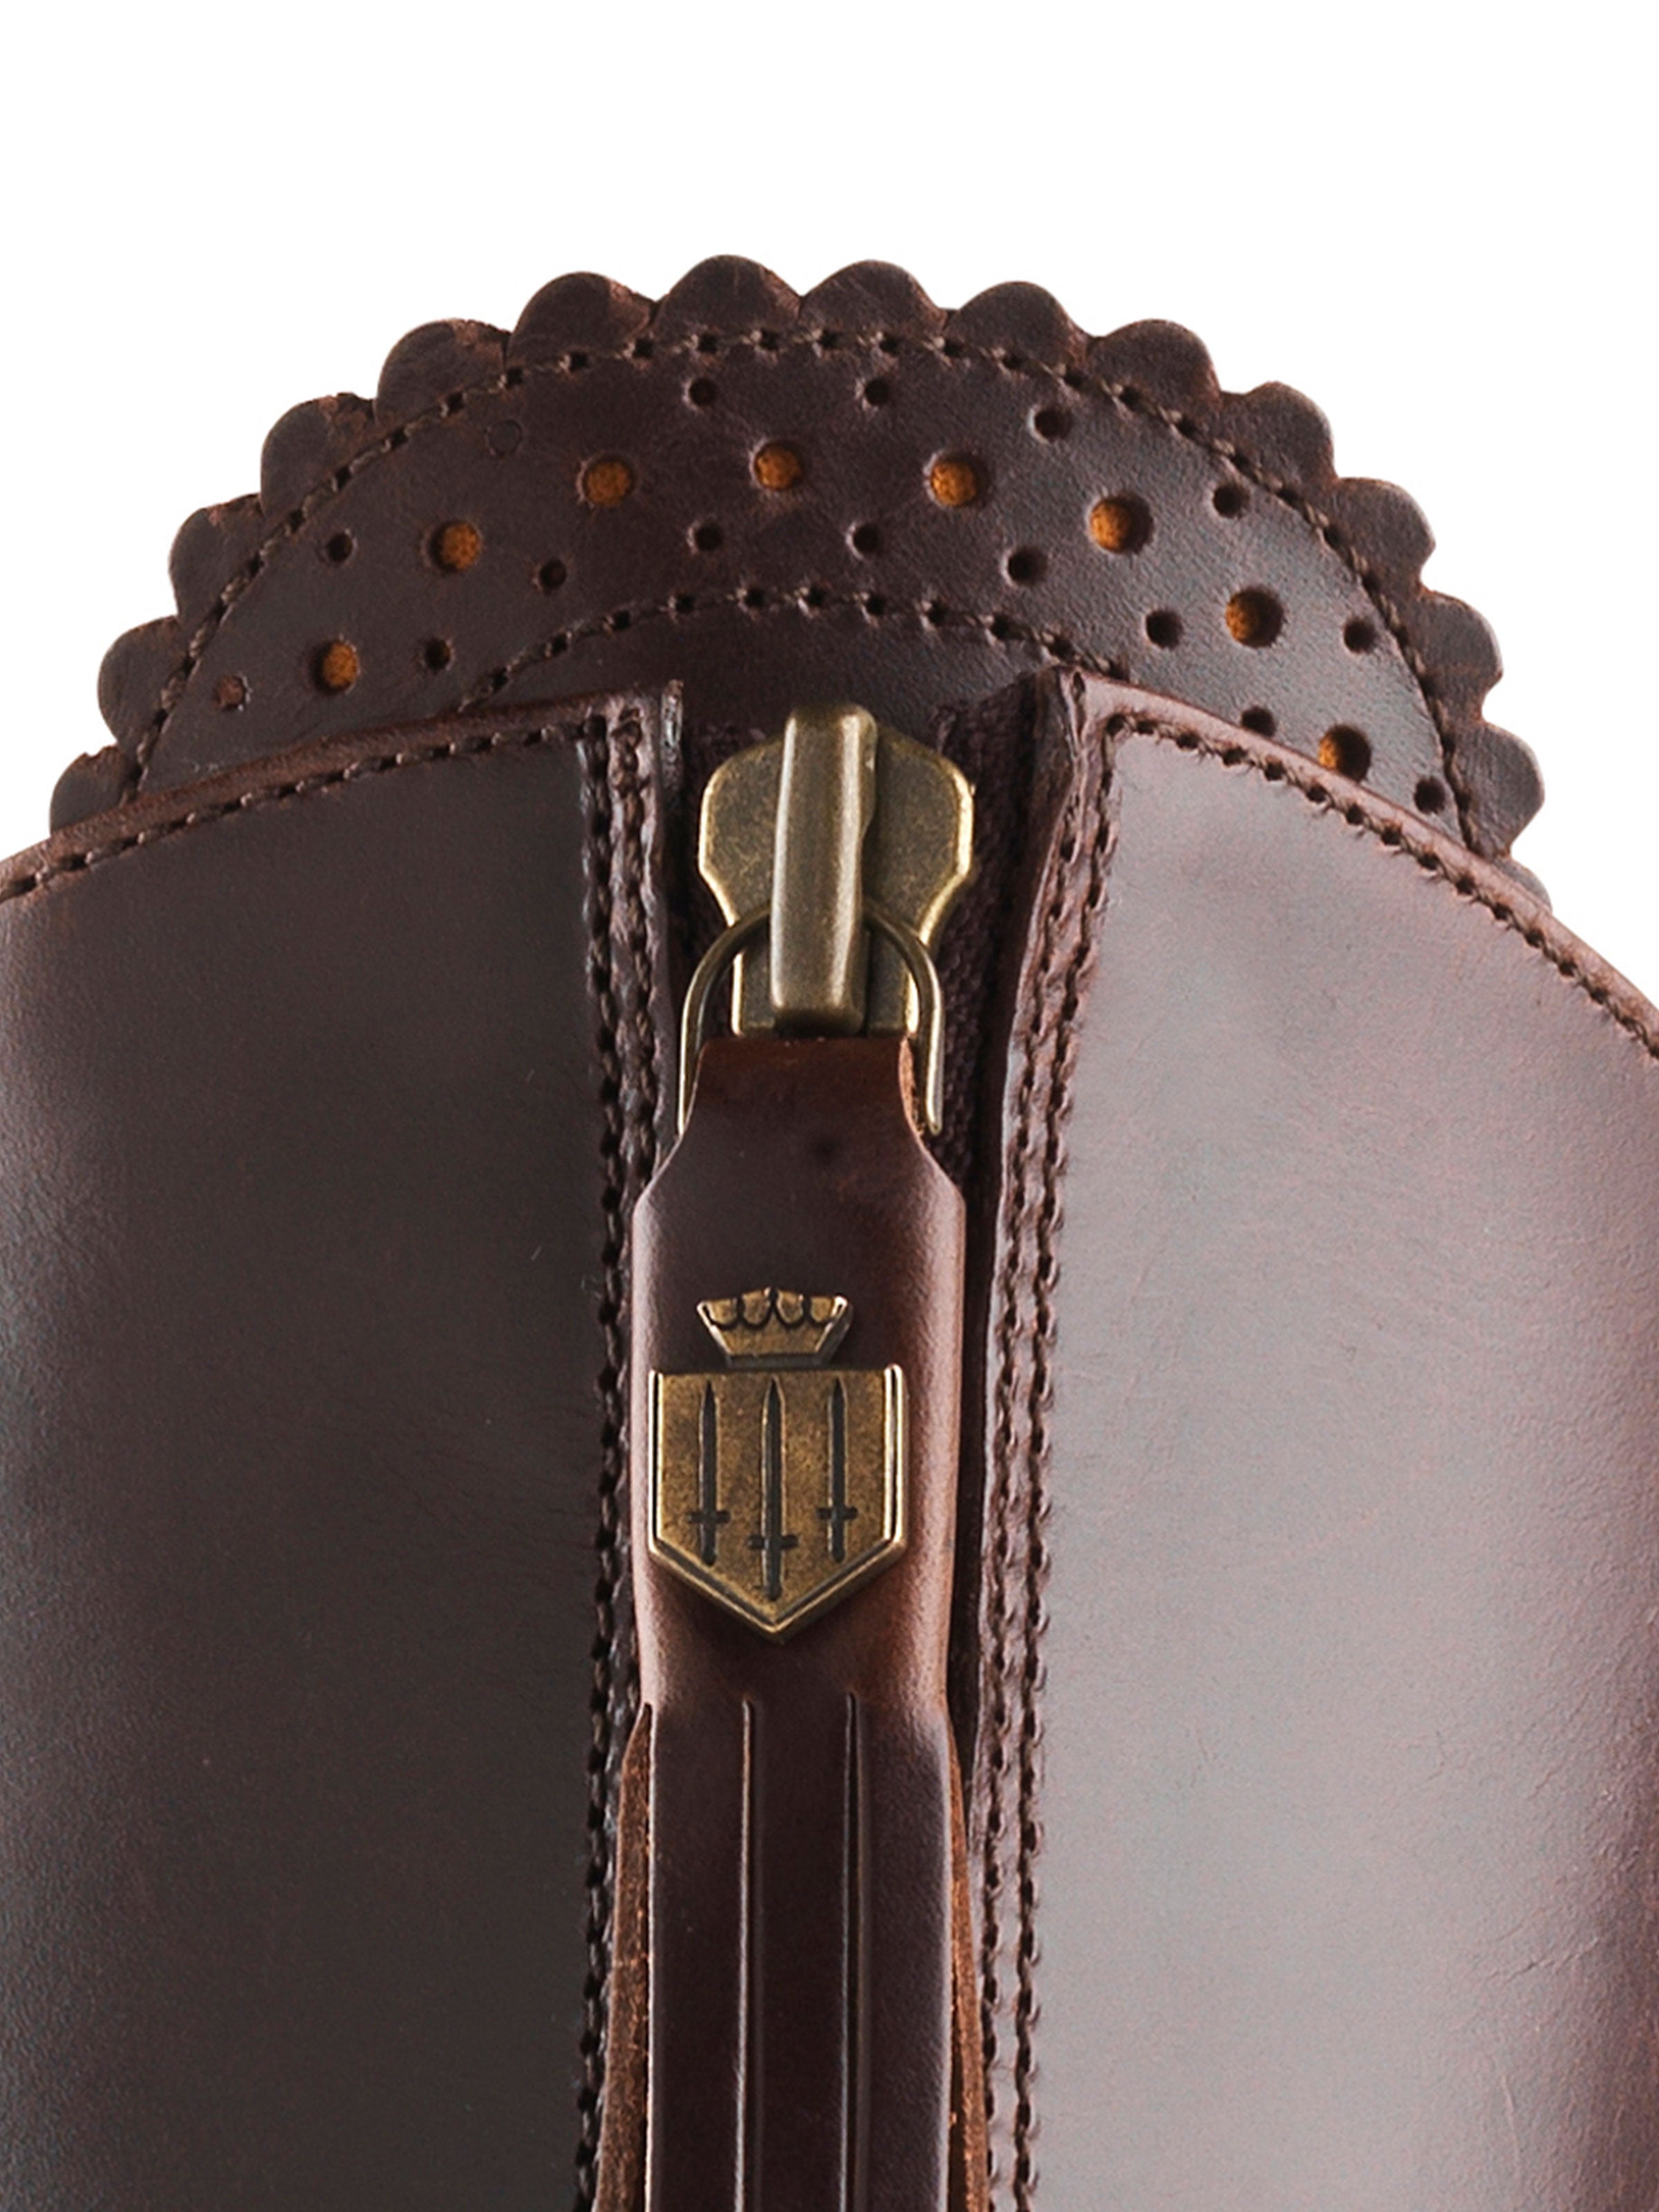 The Heeled Regina Boot - Mahogany Leather